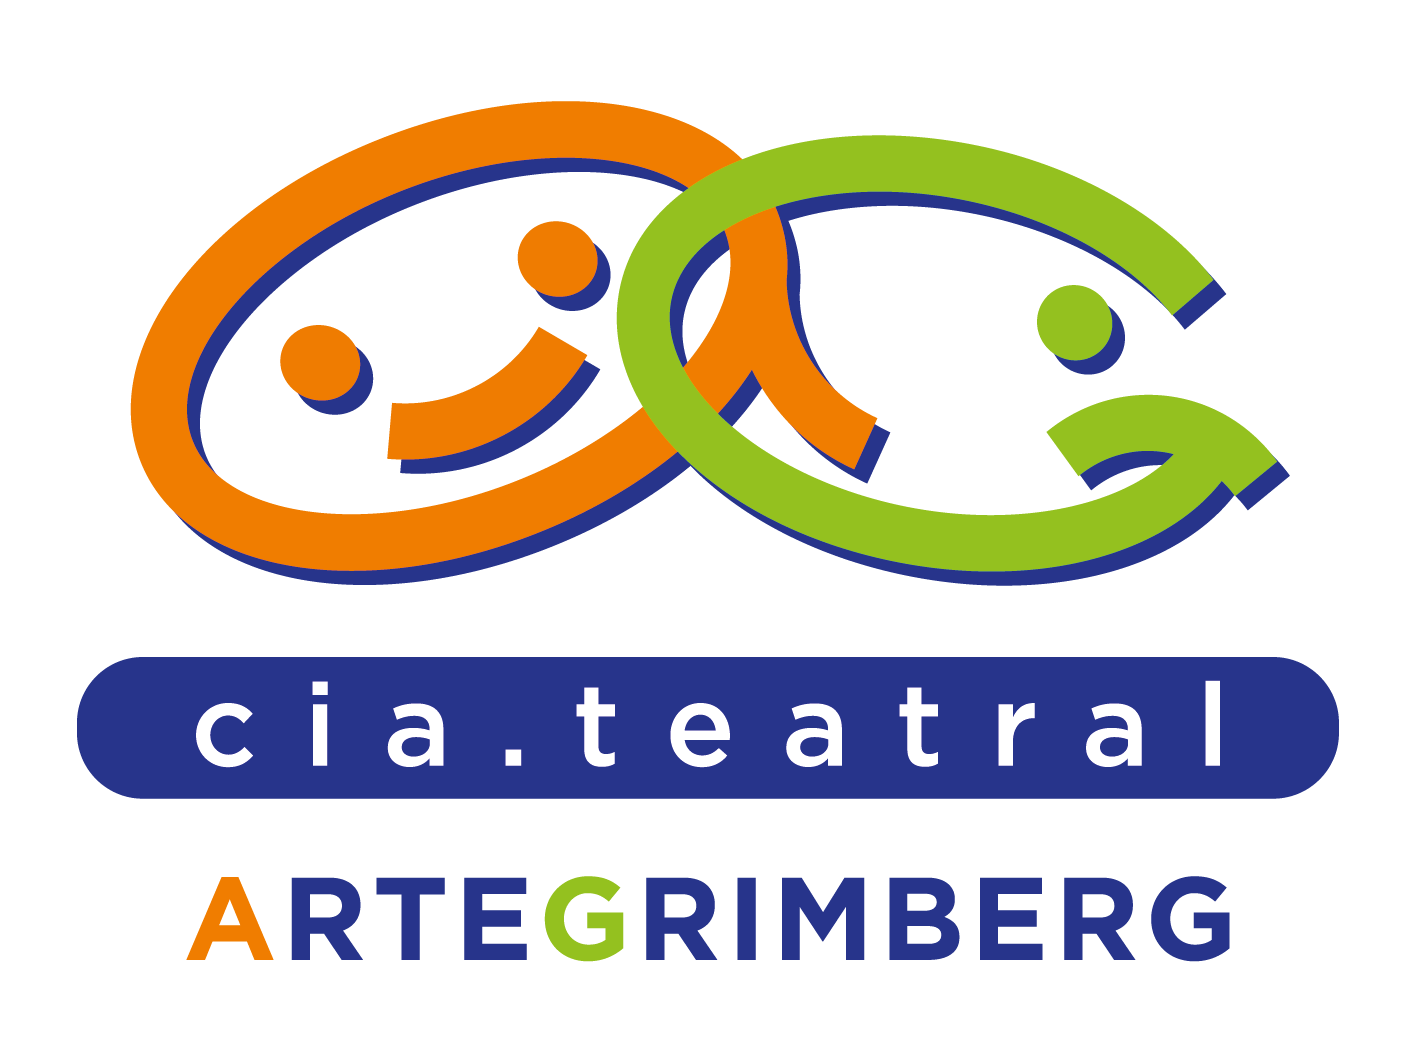 Teatro Arte Grimberg